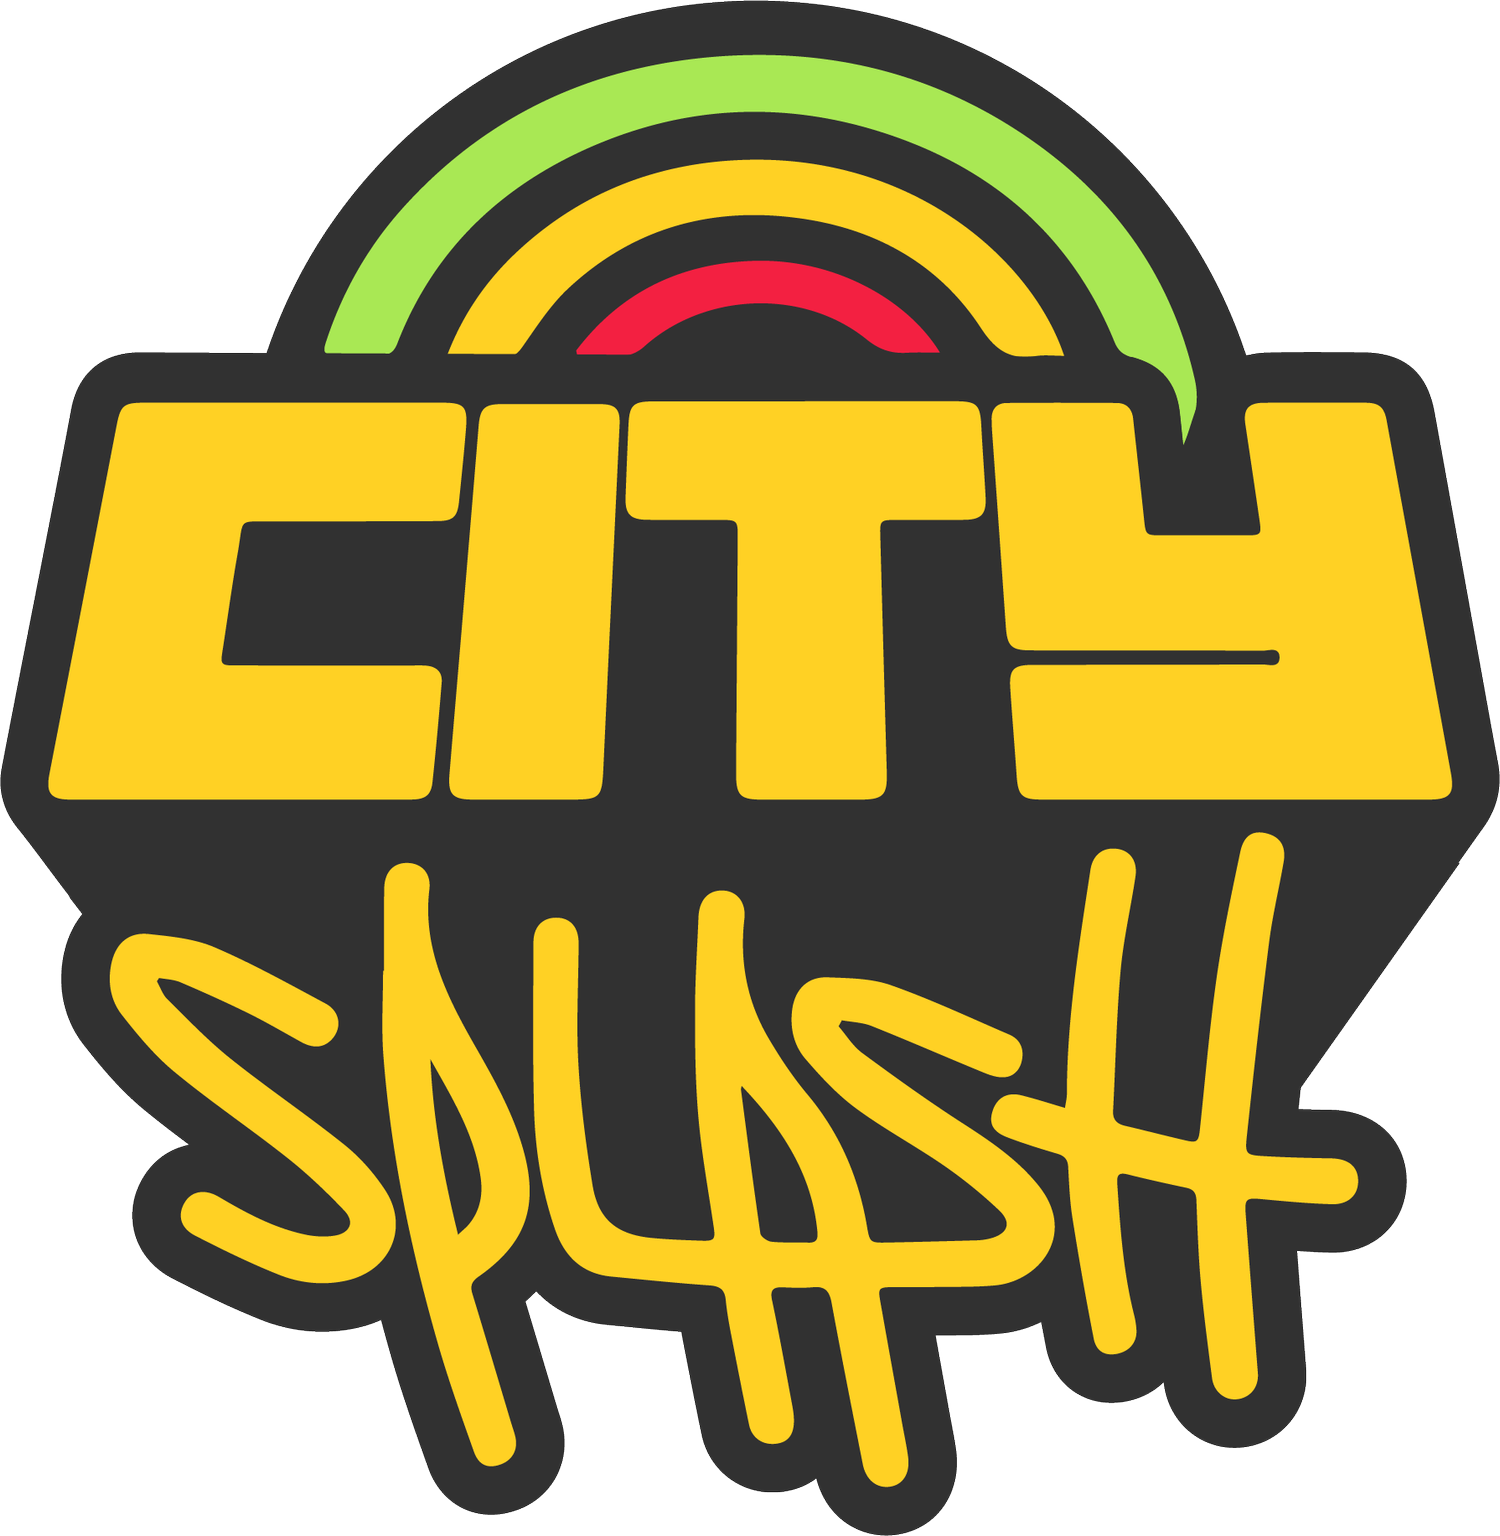 City Splash